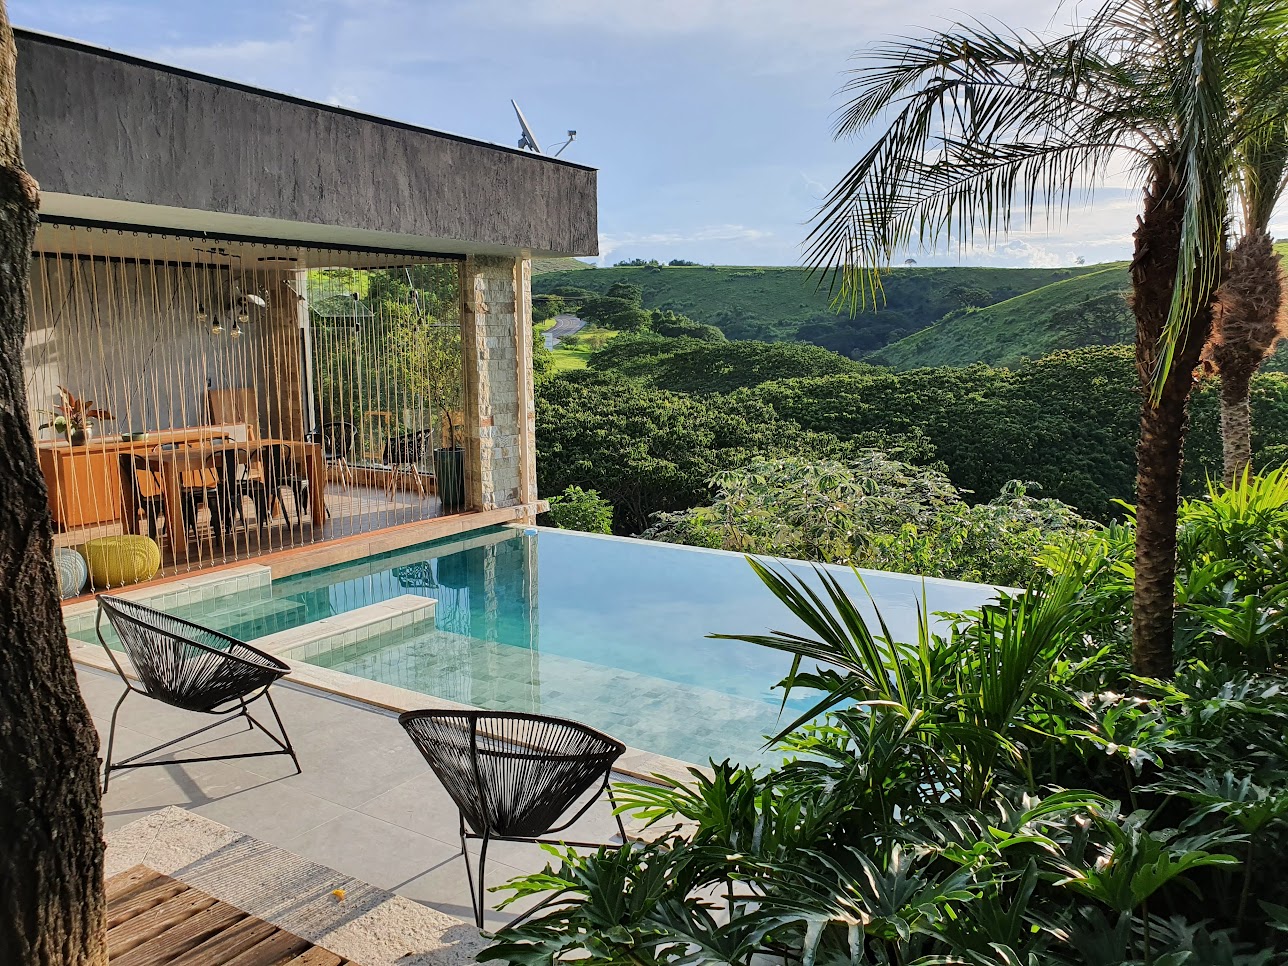 Jardim de 200 m² tem paisagismo tropical e lago que funciona como piscina. Projeto de Júlio Sousa, Na foto, piscina com borda infinita e varanda.